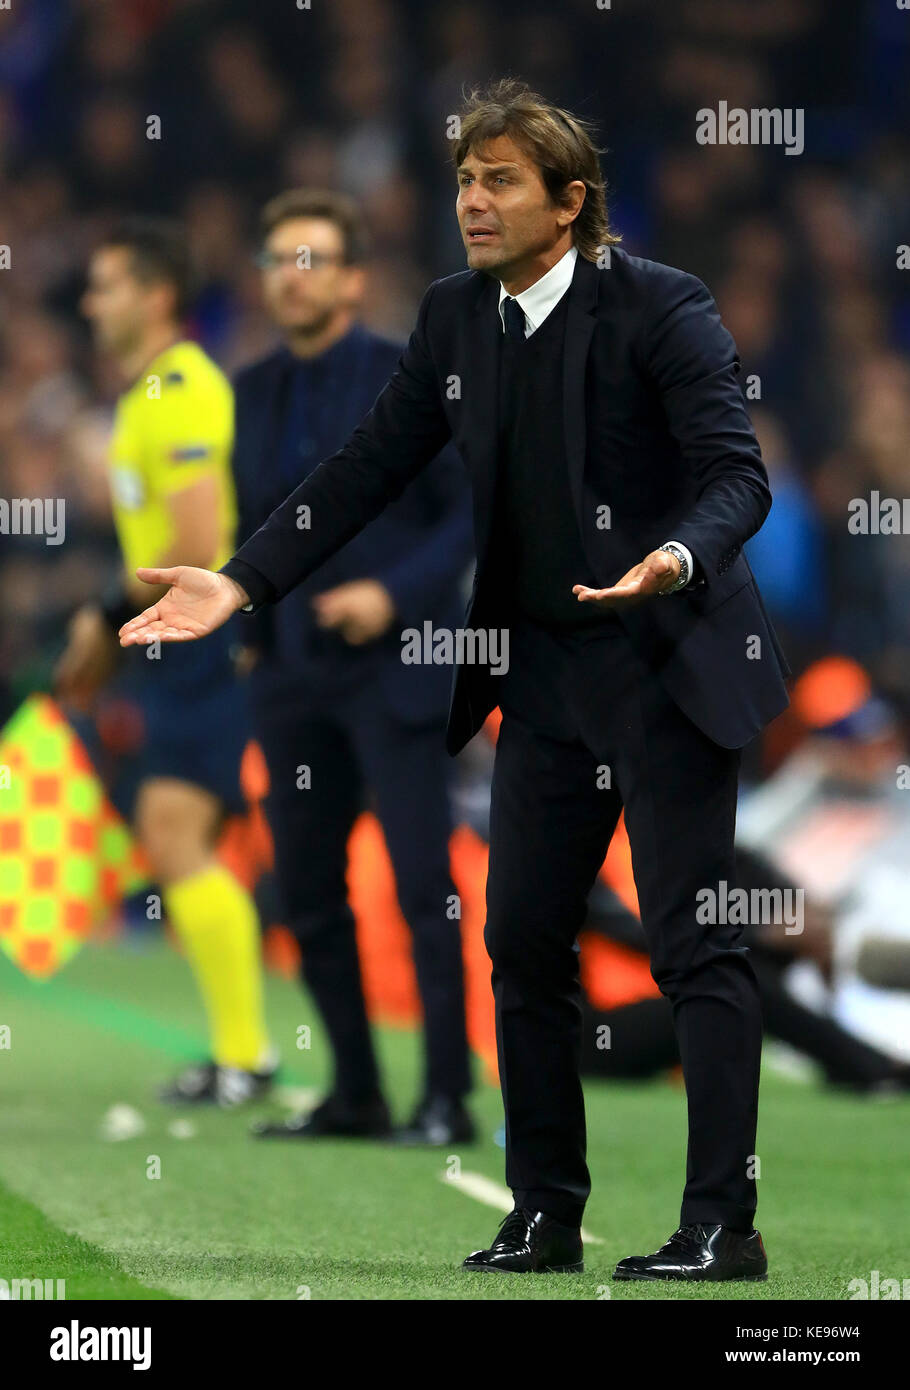 Antonio Conte, directeur de Chelsea, lors du match du groupe C de l'UEFA Champions League à Stamford Bridge, Londres. Banque D'Images